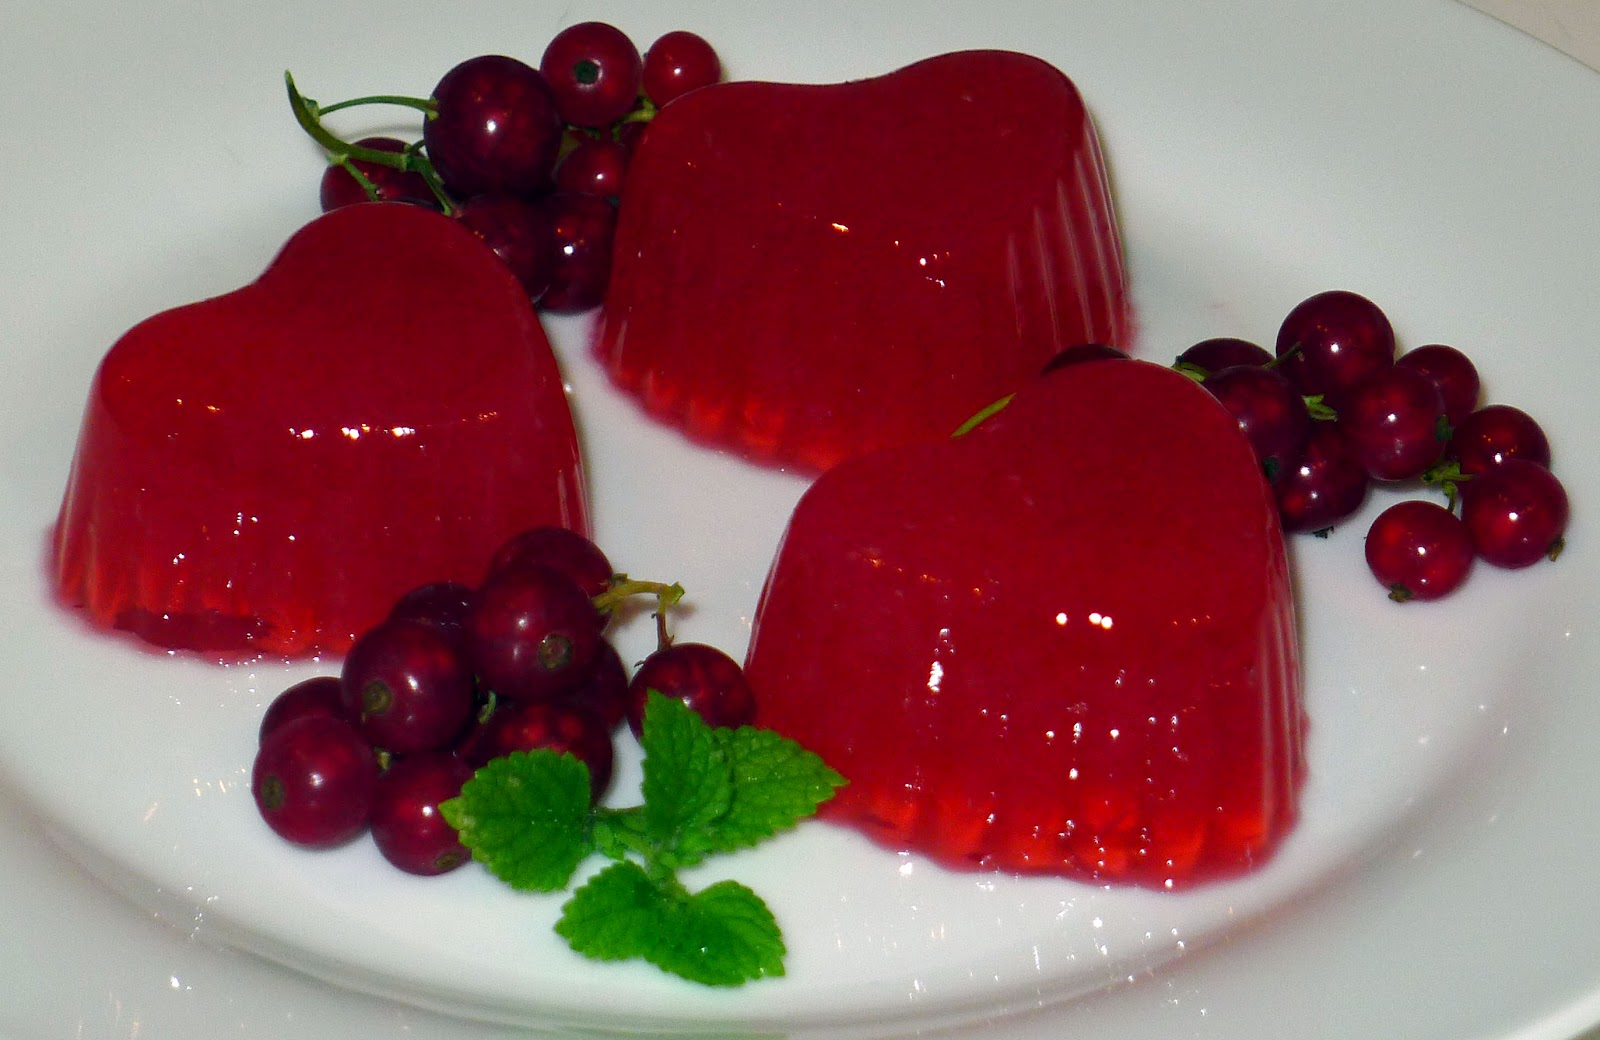 Рецепт желе из желатина в домашних условиях из замороженных ягод как сделать пошагово с фото